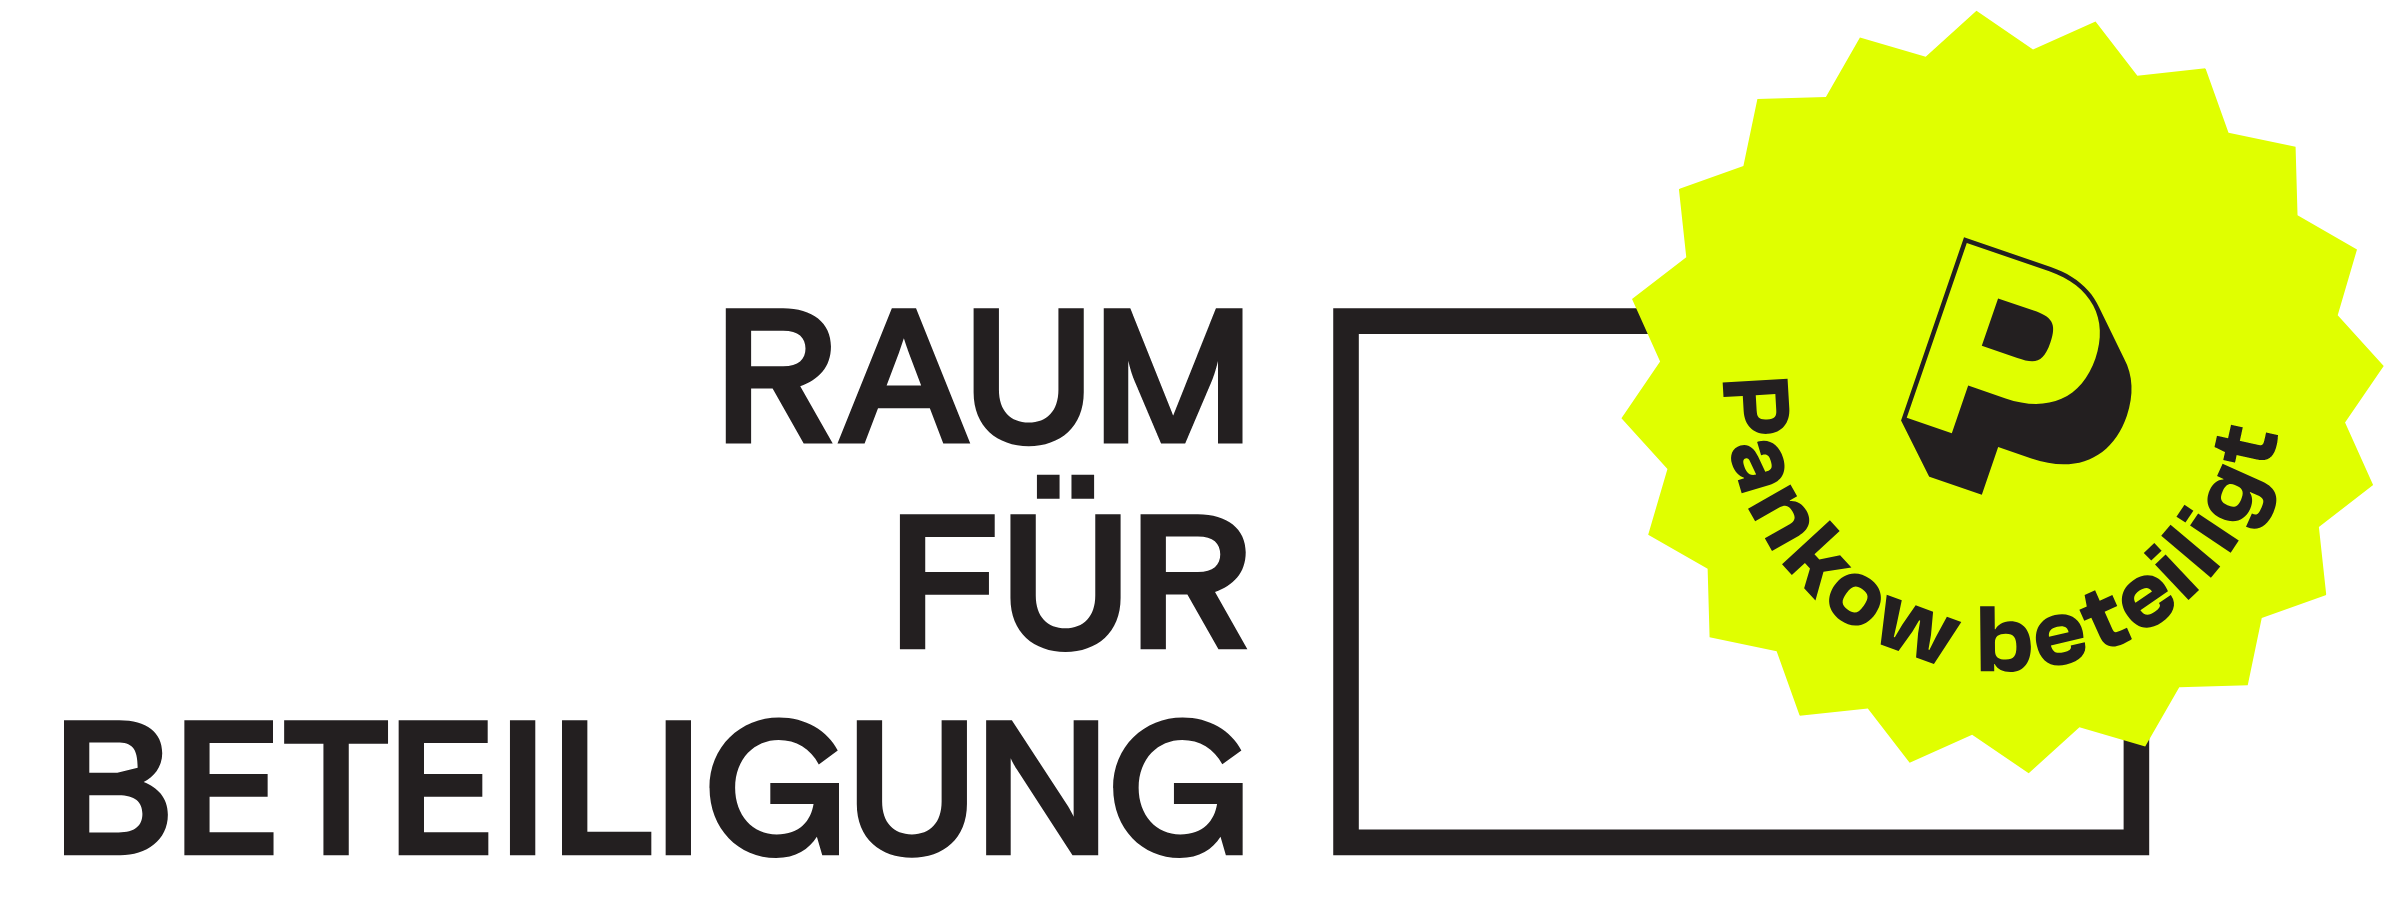 Logo Raum für Beteiligung